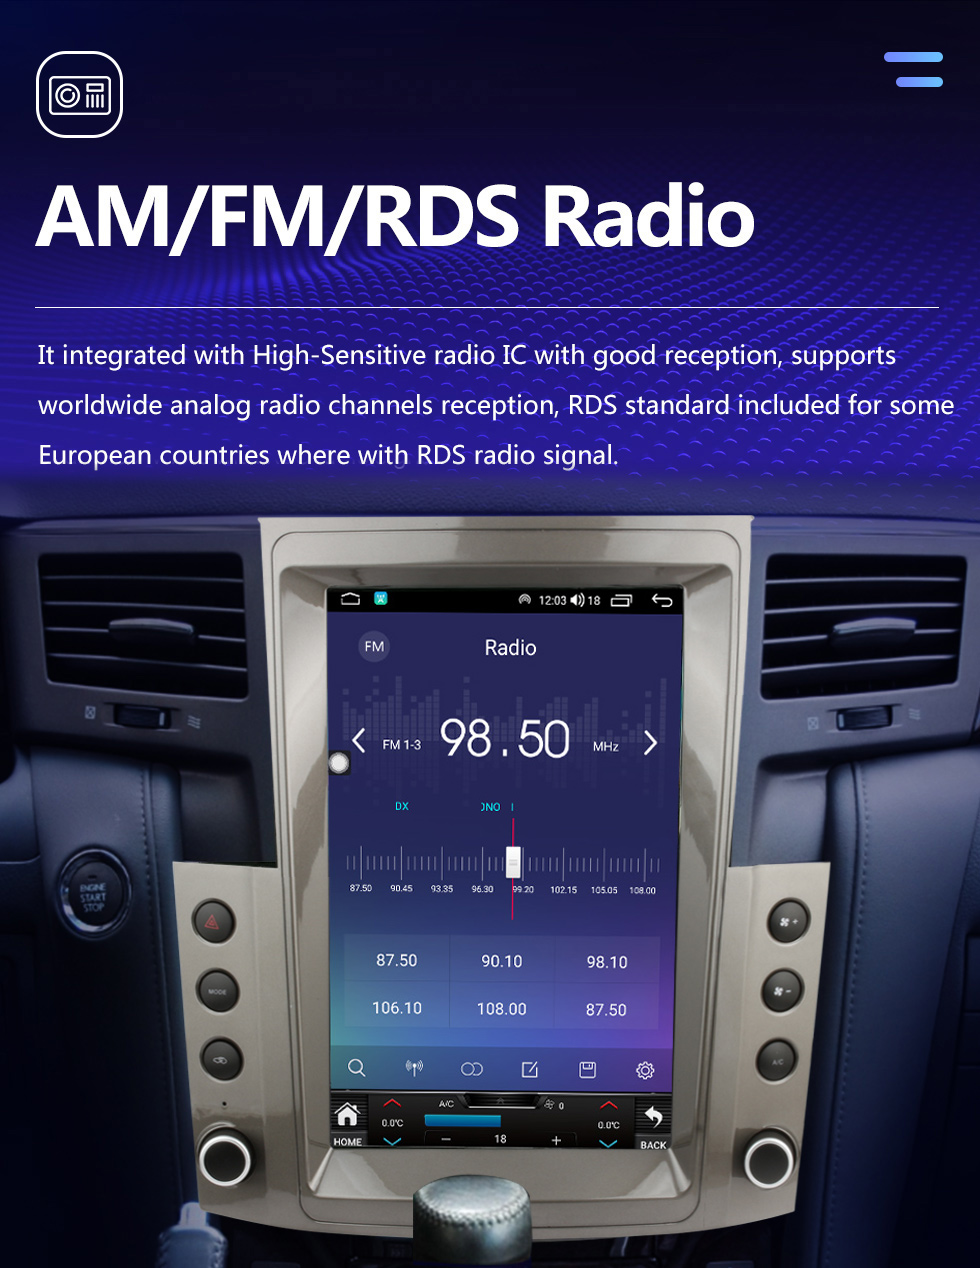 Seicane Rádio do carro de 12,1 polegadas Android 10.0 para 2007-2009 Lexus LX570 Sistema de navegação GPS com suporte a Bluetooth Carplay OBD2 DVR TPMS